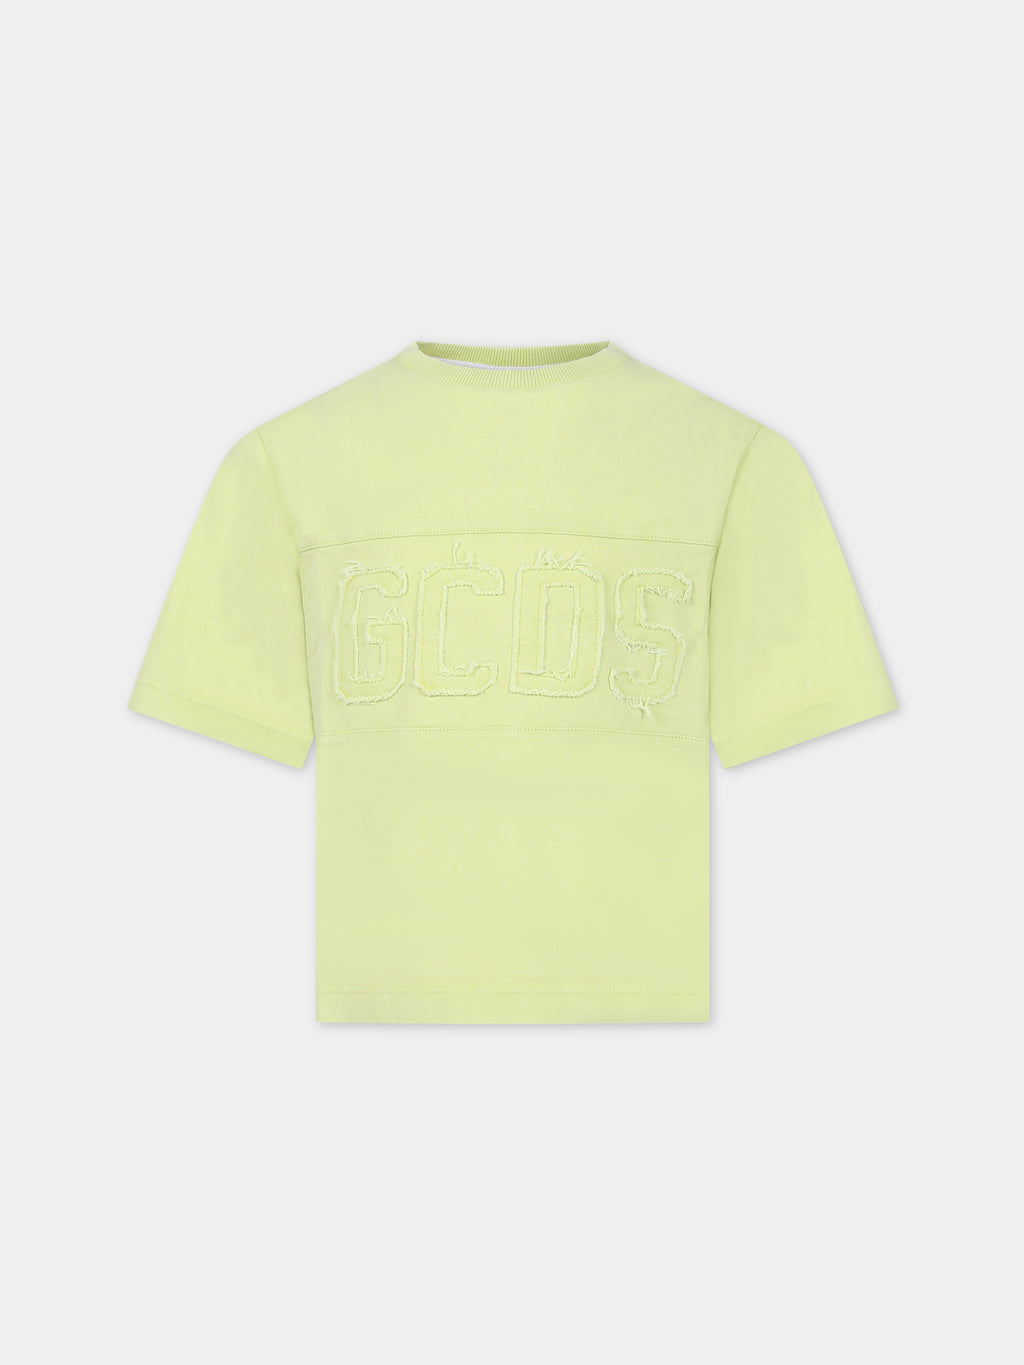 T-shirt jaune pour enfants avec logo